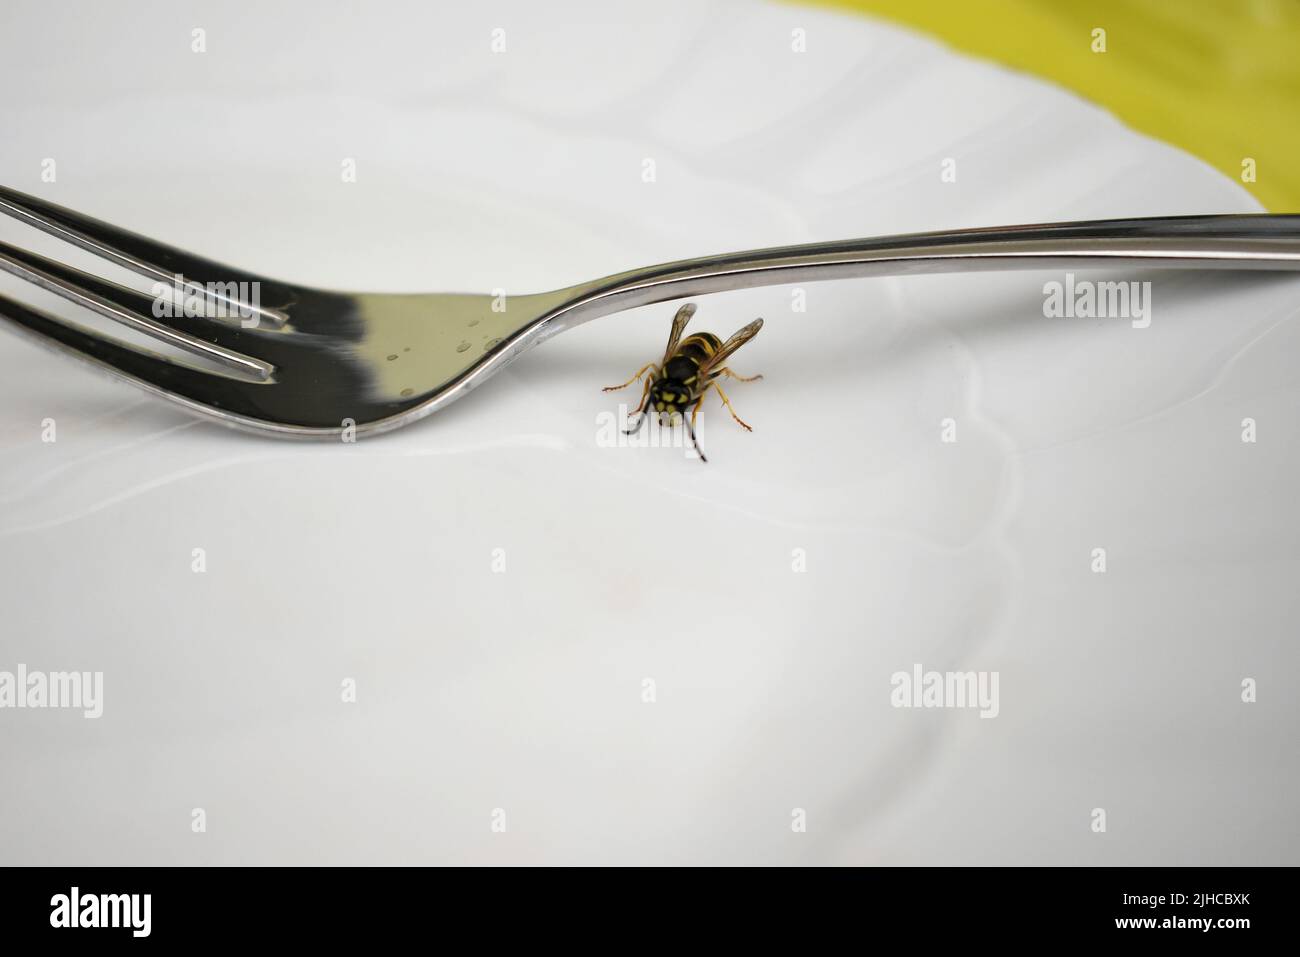 Eine Wespe sitzt neben einer Tasse Kuchengabel. Gefährliche Situation in der Garde, Risiko, gestochen zu werden Stockfoto